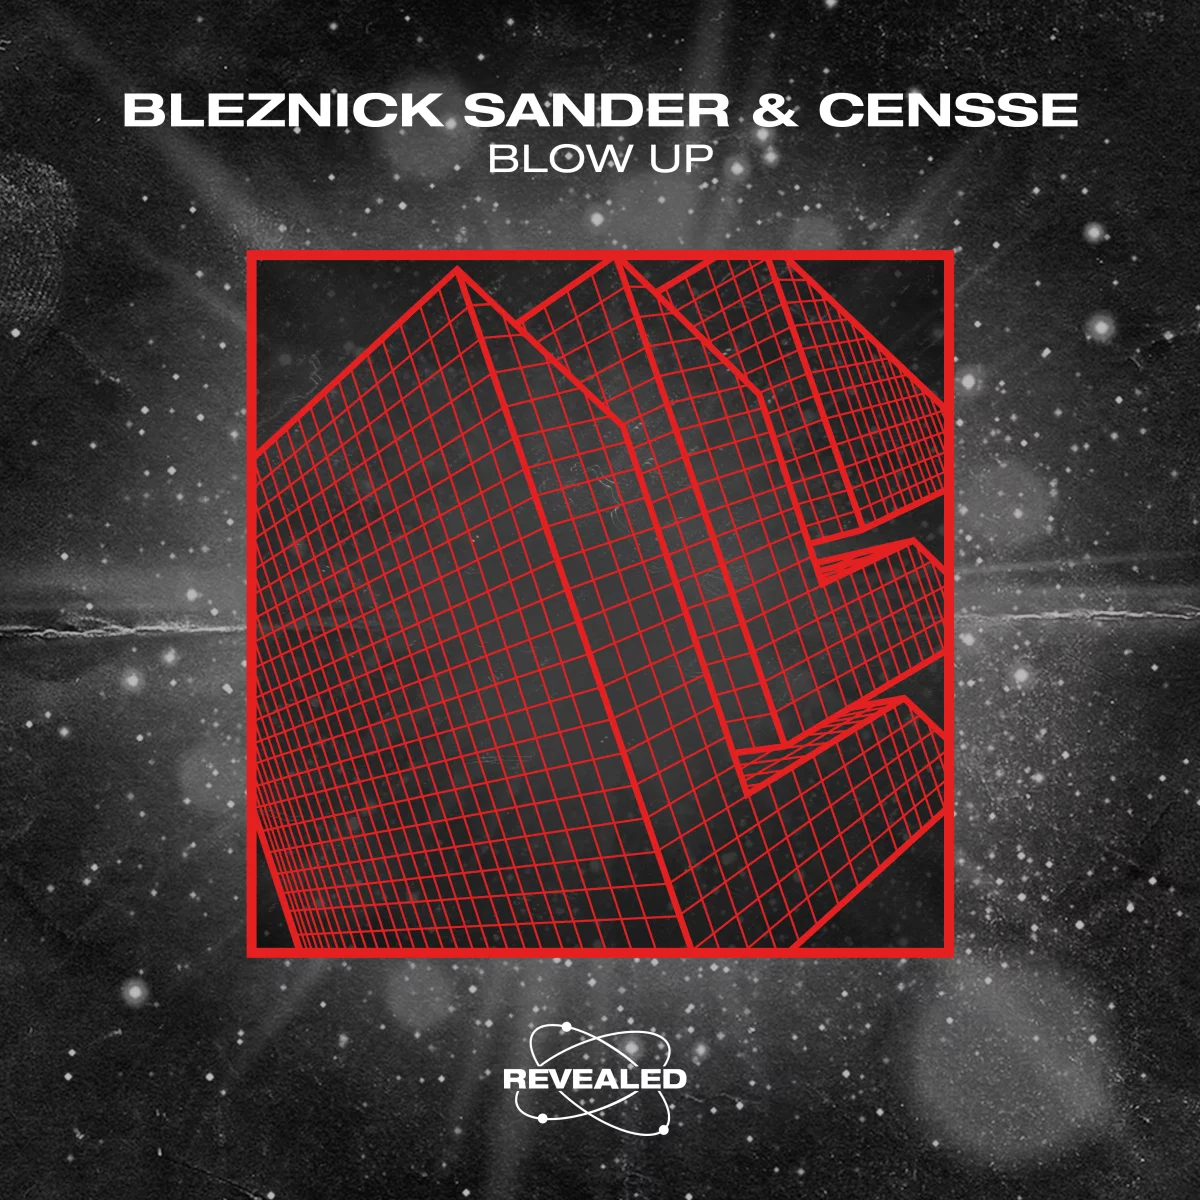 Blow Up - Bleznick Sander⁠ & Censse⁠ ⁠ 